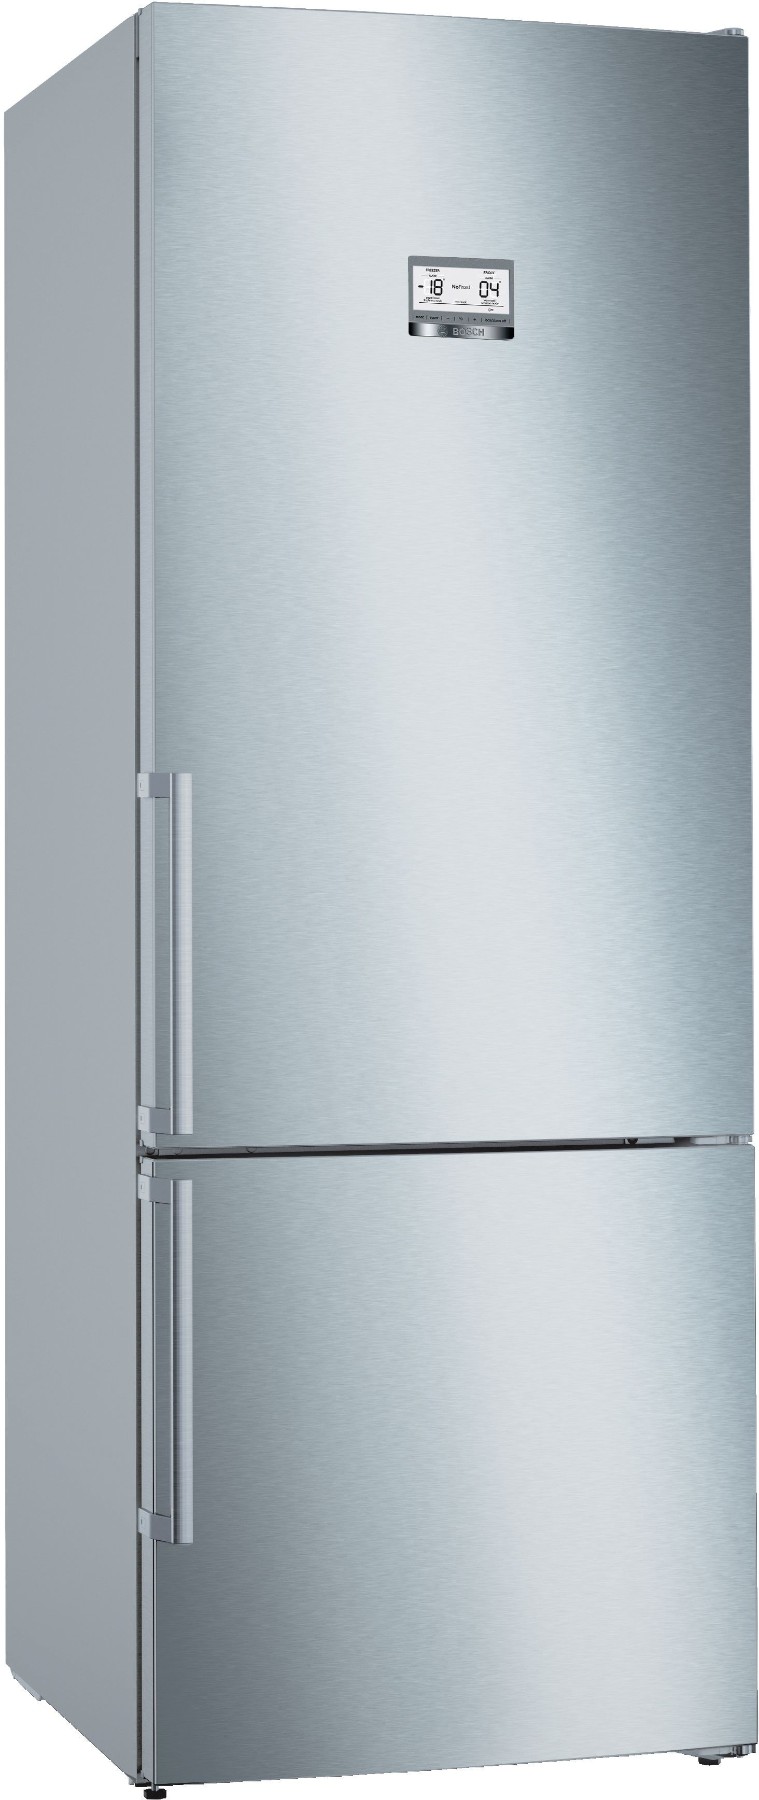 KGN56AIE0N Serie | 6 Alttan Donduruculu Buzdolabı 193 x 70 cm Kolay temizlenebilir Inox